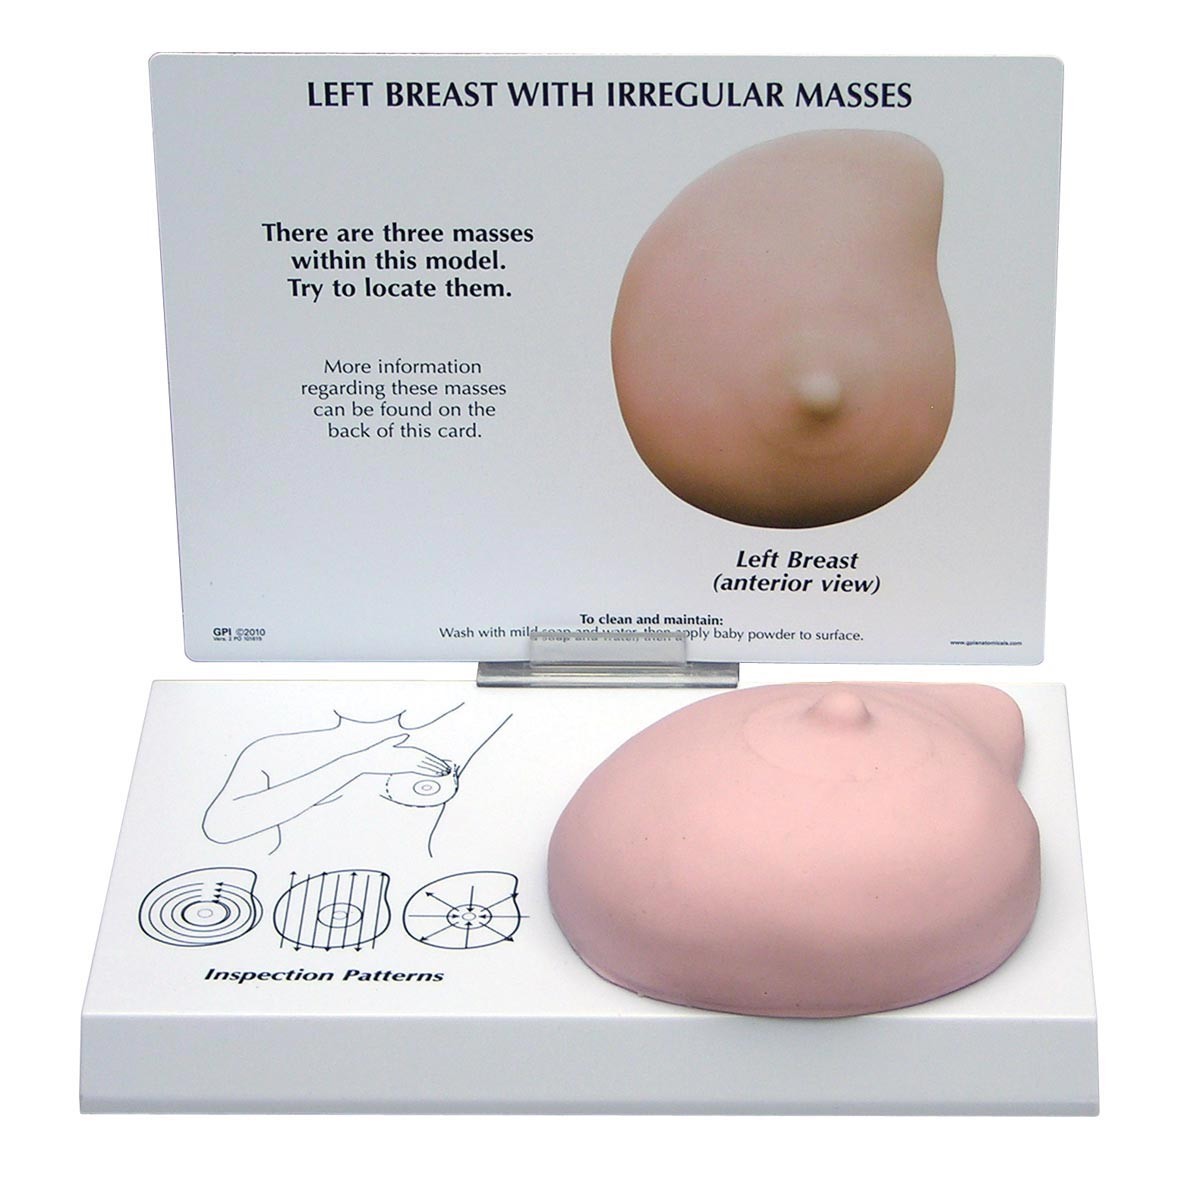 Modell einer linken Brust mit unregelmäßigen Massen